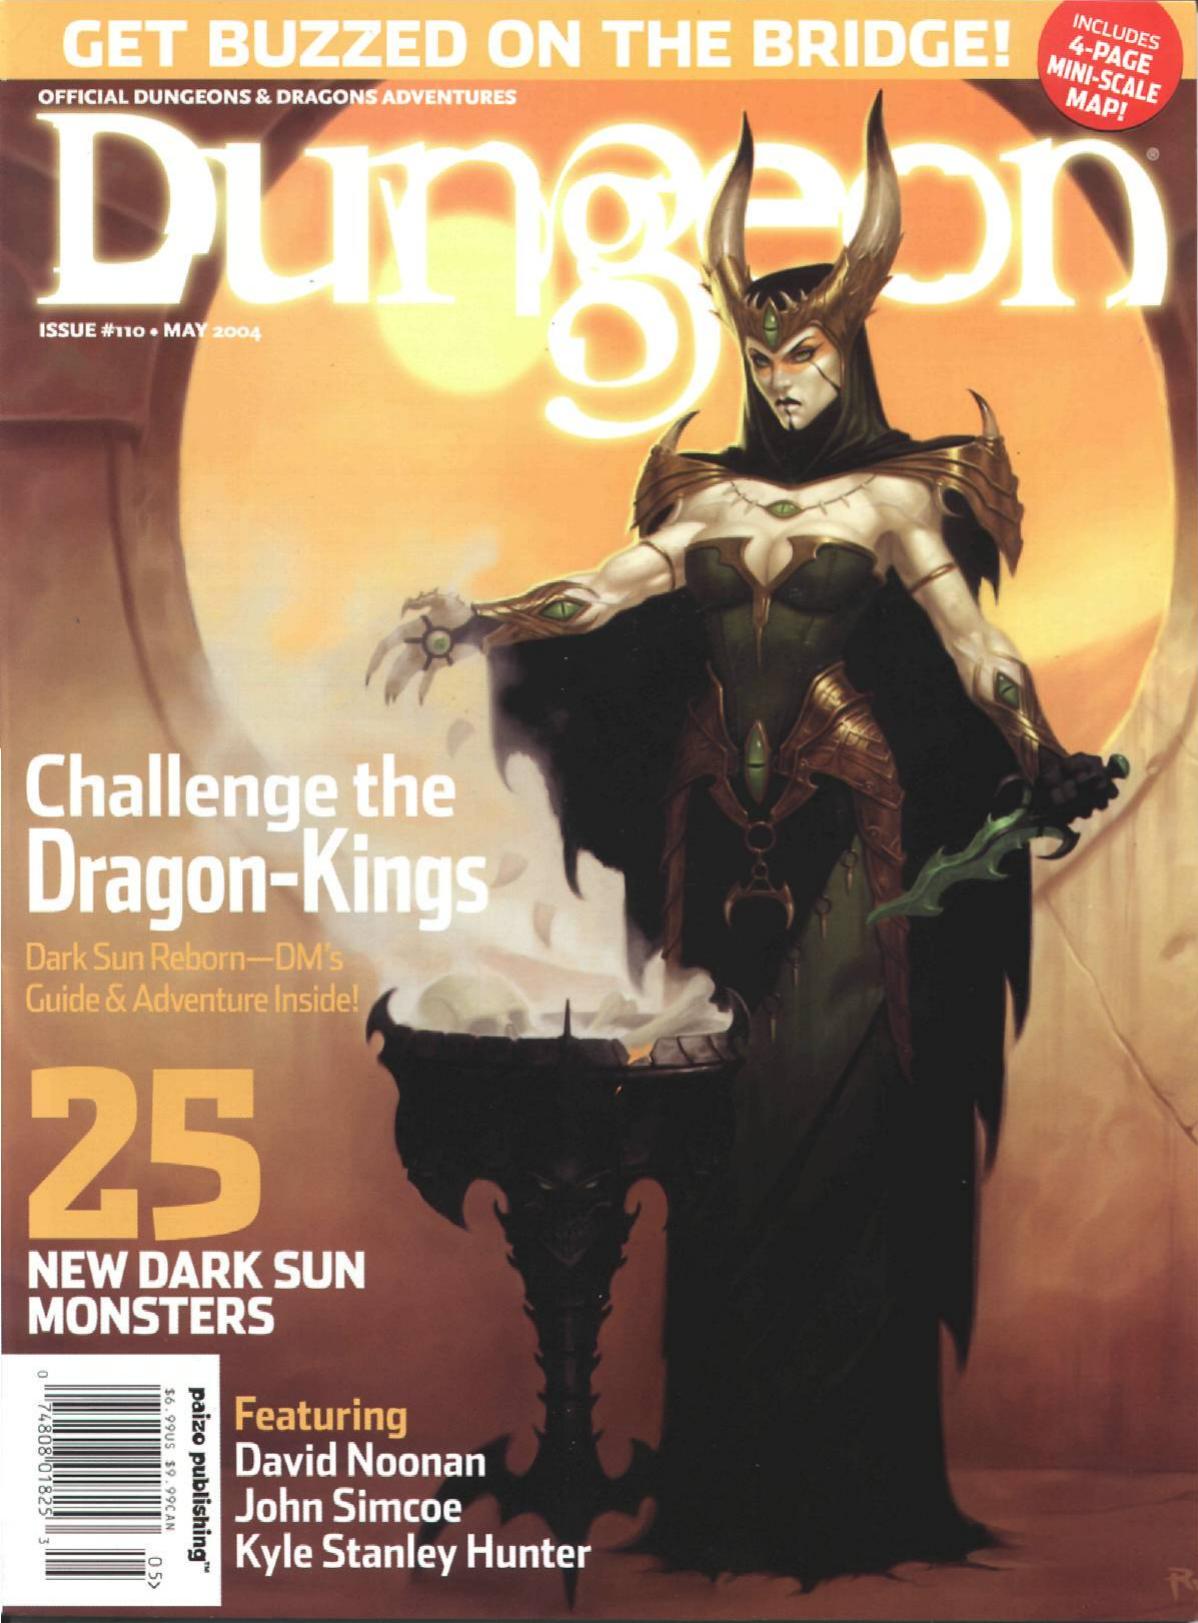 Dungeon Magazine #110